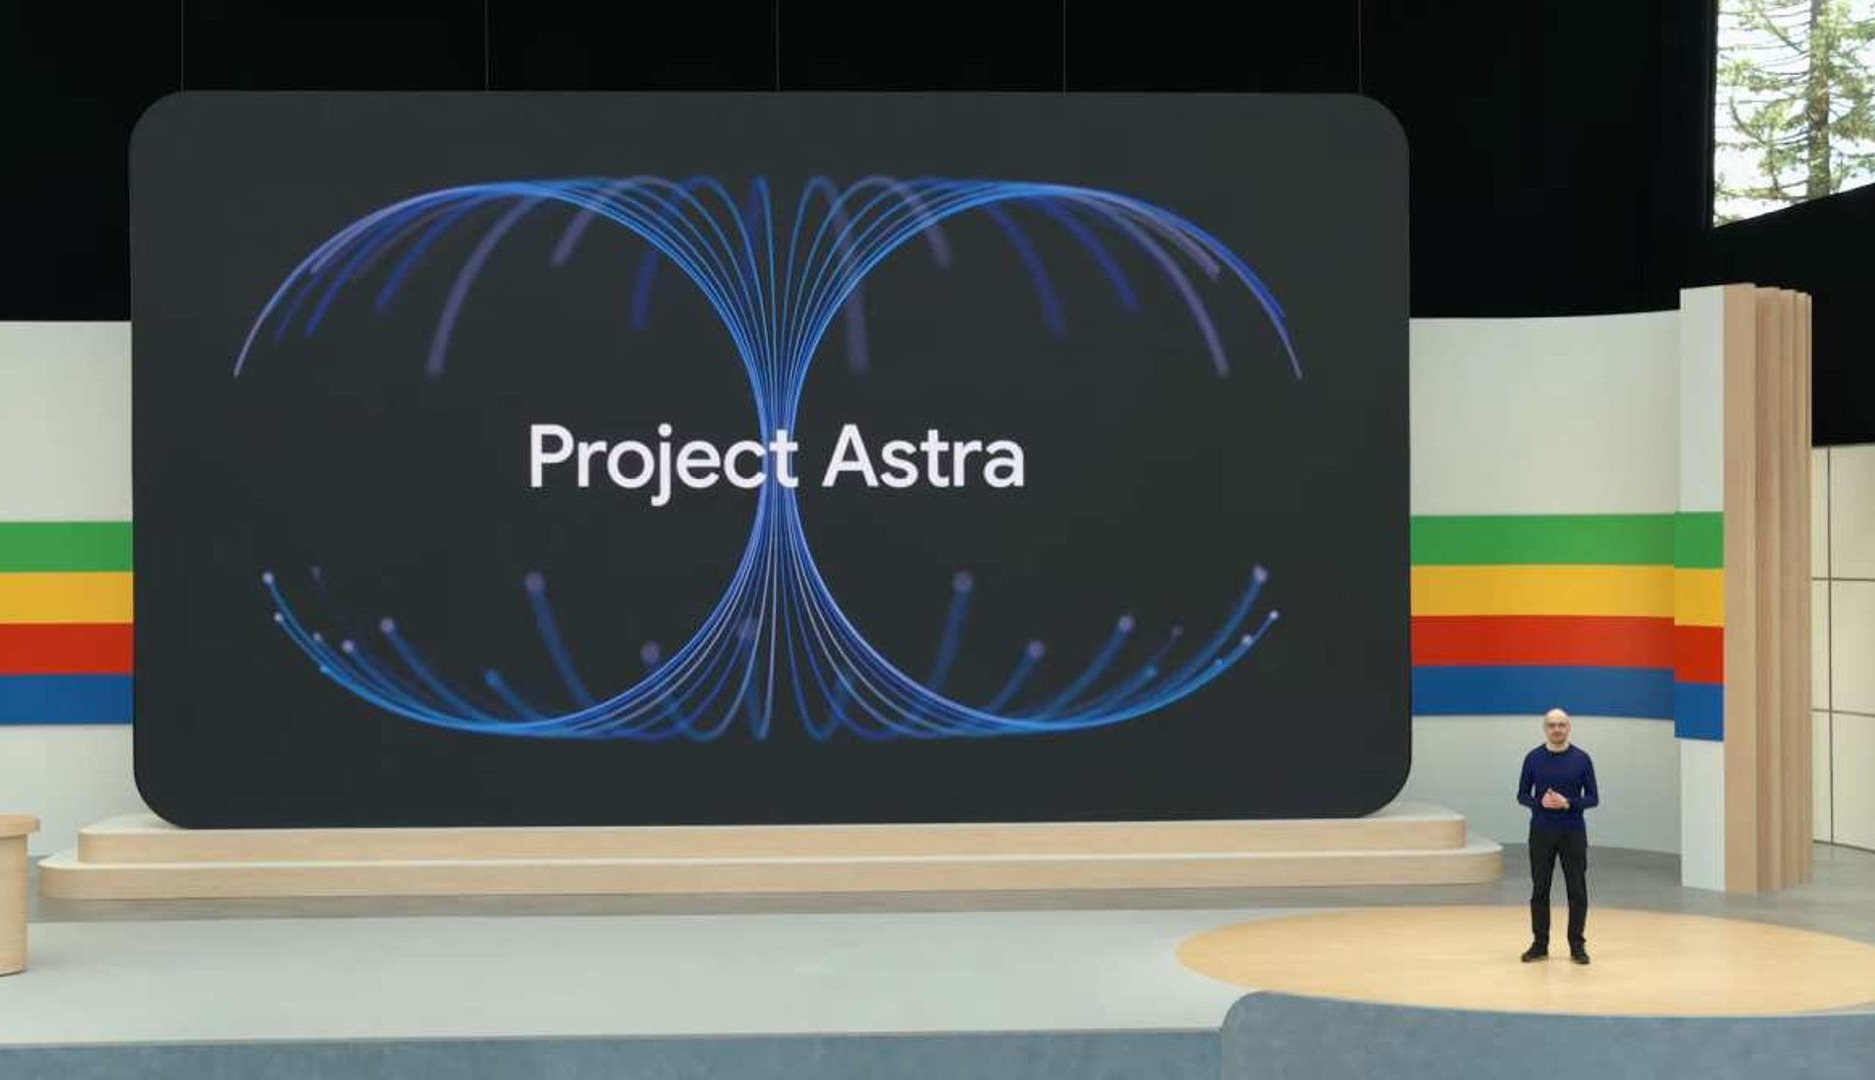 Directivo de Google durante la presentación de Proyecto Astra